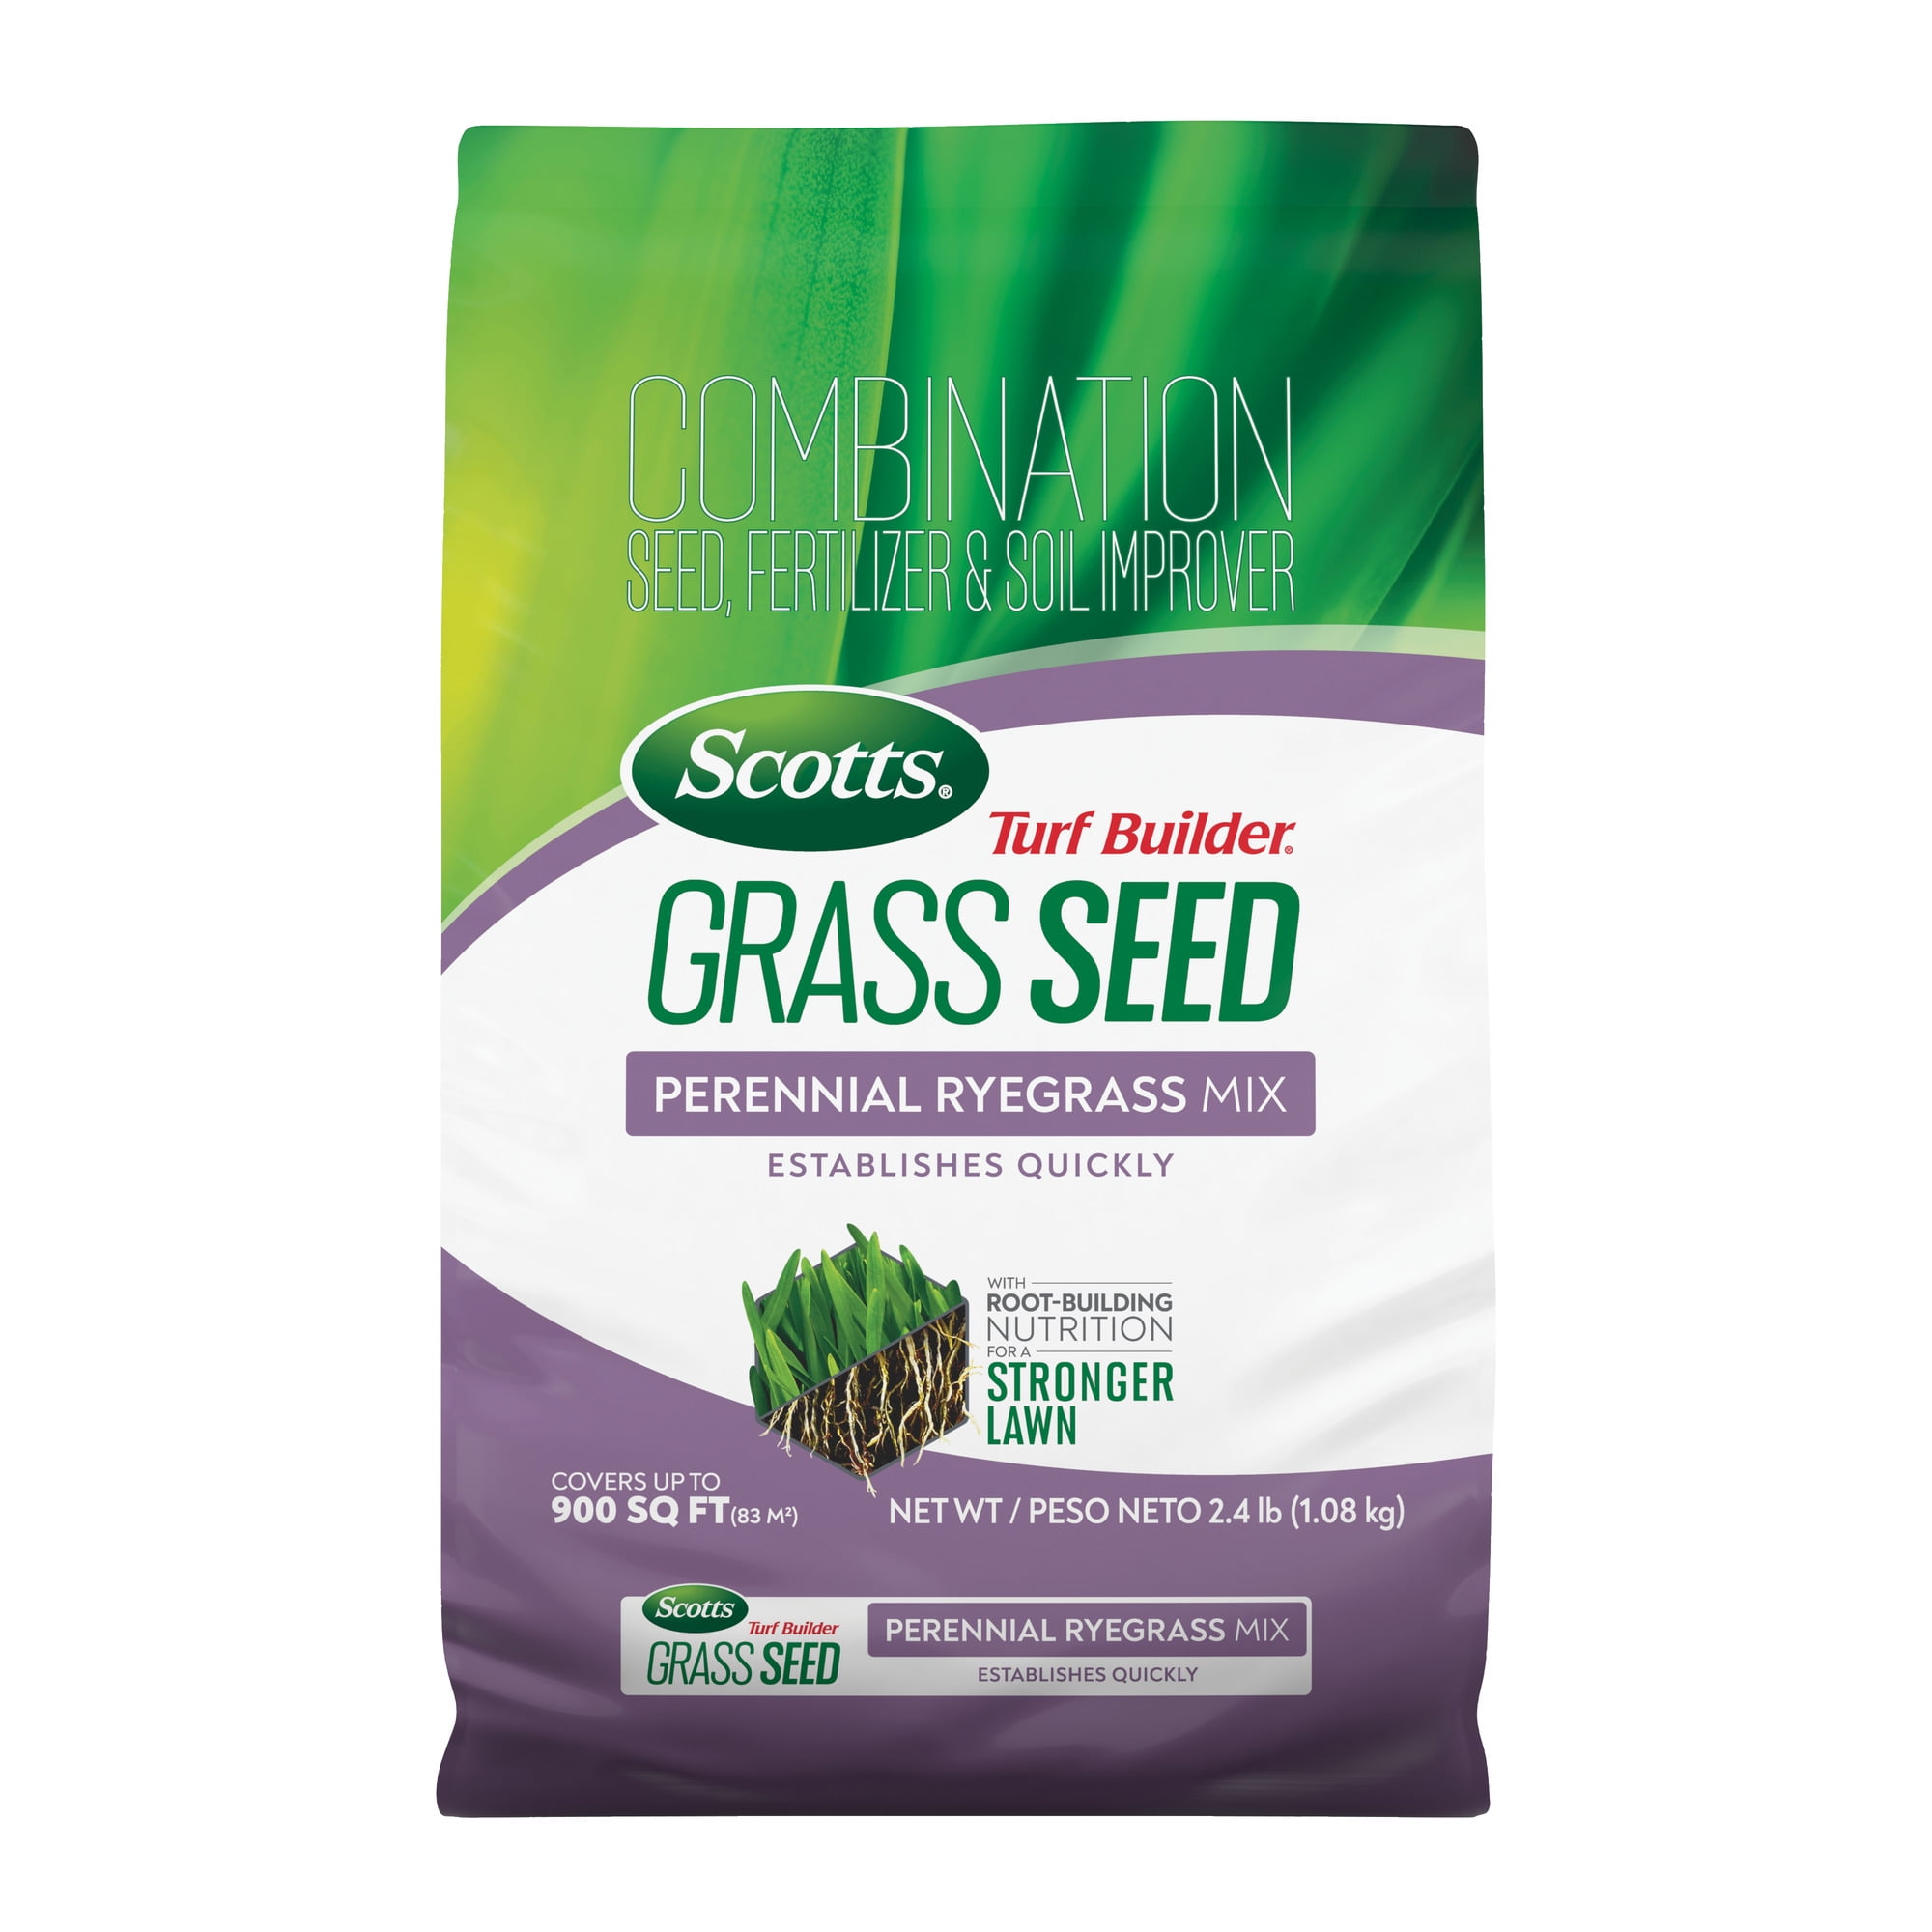 Scotts Turf Builder Grass Seed Perennial Ryegrass Mix, 2.4 lb.